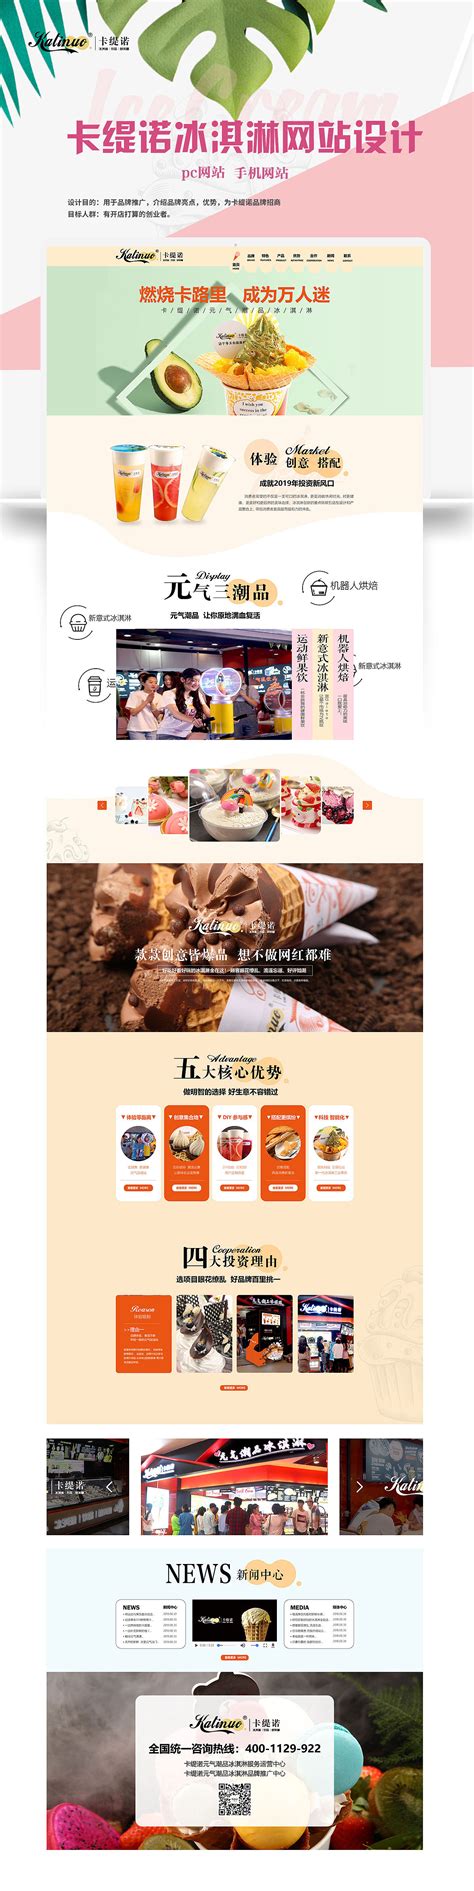 美食餐饮网站模板设计欣赏 - - 大美工dameigong.cn